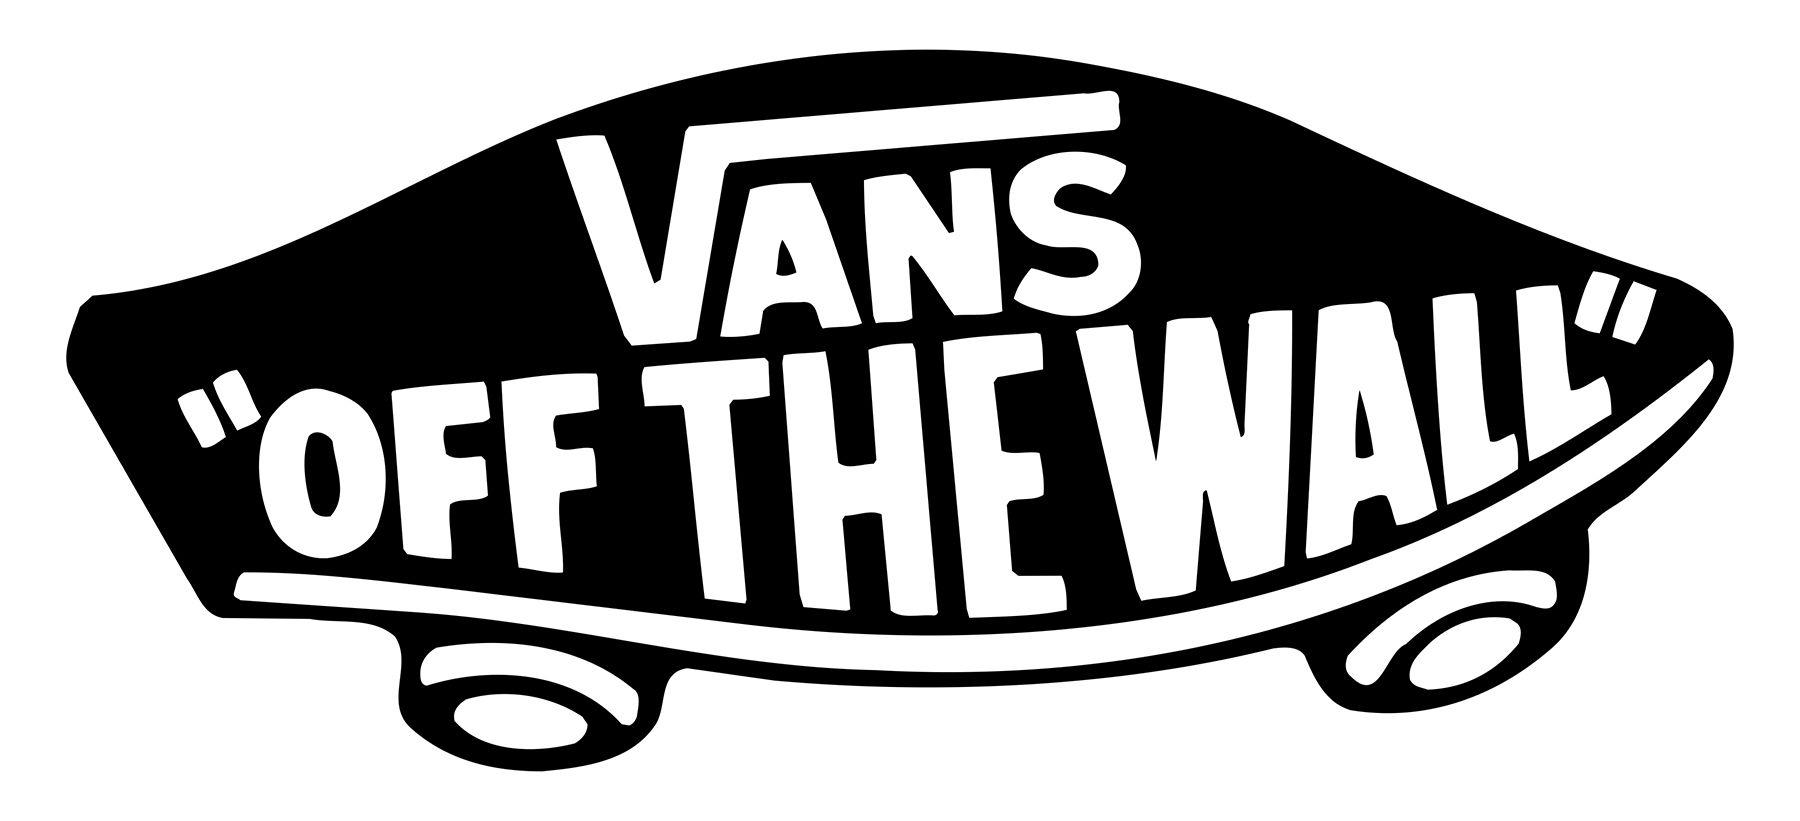 Vans Brand Logo - Vans Logo, Vans Symbol, Meaning, History and Evolution